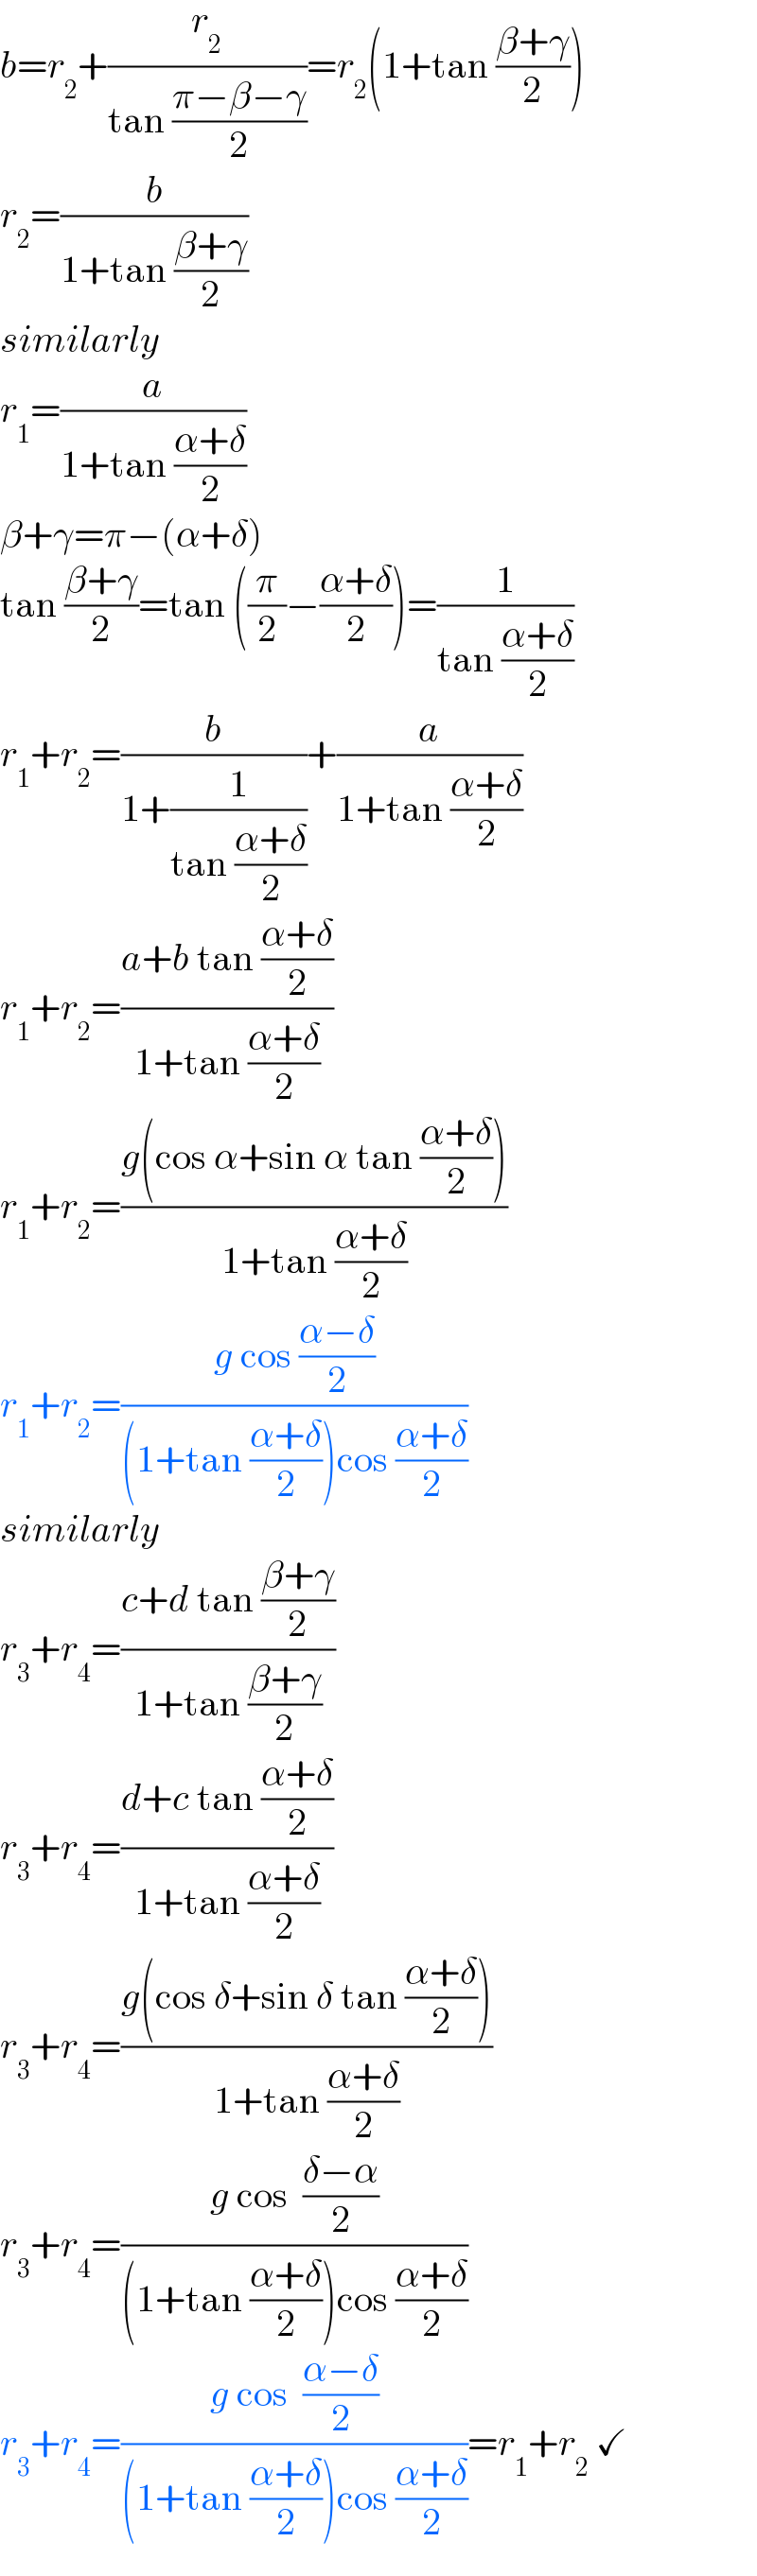 b=r_2 +(r_2 /(tan ((π−β−γ)/2)))=r_2 (1+tan ((β+γ)/2))  r_2 =(b/(1+tan ((β+γ)/2)))  similarly  r_1 =(a/(1+tan ((α+δ)/2)))  β+γ=π−(α+δ)  tan ((β+γ)/2)=tan ((π/2)−((α+δ)/2))=(1/(tan ((α+δ)/2)))  r_1 +r_2 =(b/(1+(1/(tan ((α+δ)/2)))))+(a/(1+tan ((α+δ)/2)))  r_1 +r_2 =((a+b tan ((α+δ)/2))/(1+tan ((α+δ)/2)))  r_1 +r_2 =((g(cos α+sin α tan ((α+δ)/2)))/(1+tan ((α+δ)/2)))  r_1 +r_2 =((g cos ((α−δ)/2))/((1+tan ((α+δ)/2))cos ((α+δ)/2)))  similarly  r_3 +r_4 =((c+d tan ((β+γ)/2))/(1+tan ((β+γ)/2)))  r_3 +r_4 =((d+c tan ((α+δ)/2))/(1+tan ((α+δ)/2)))  r_3 +r_4 =((g(cos δ+sin δ tan ((α+δ)/2)))/(1+tan ((α+δ)/2)))  r_3 +r_4 =((g cos  ((δ−α)/2))/((1+tan ((α+δ)/2))cos ((α+δ)/2)))  r_3 +r_4 =((g cos  ((α−δ)/2))/((1+tan ((α+δ)/2))cos ((α+δ)/2)))=r_1 +r_2  ✓  